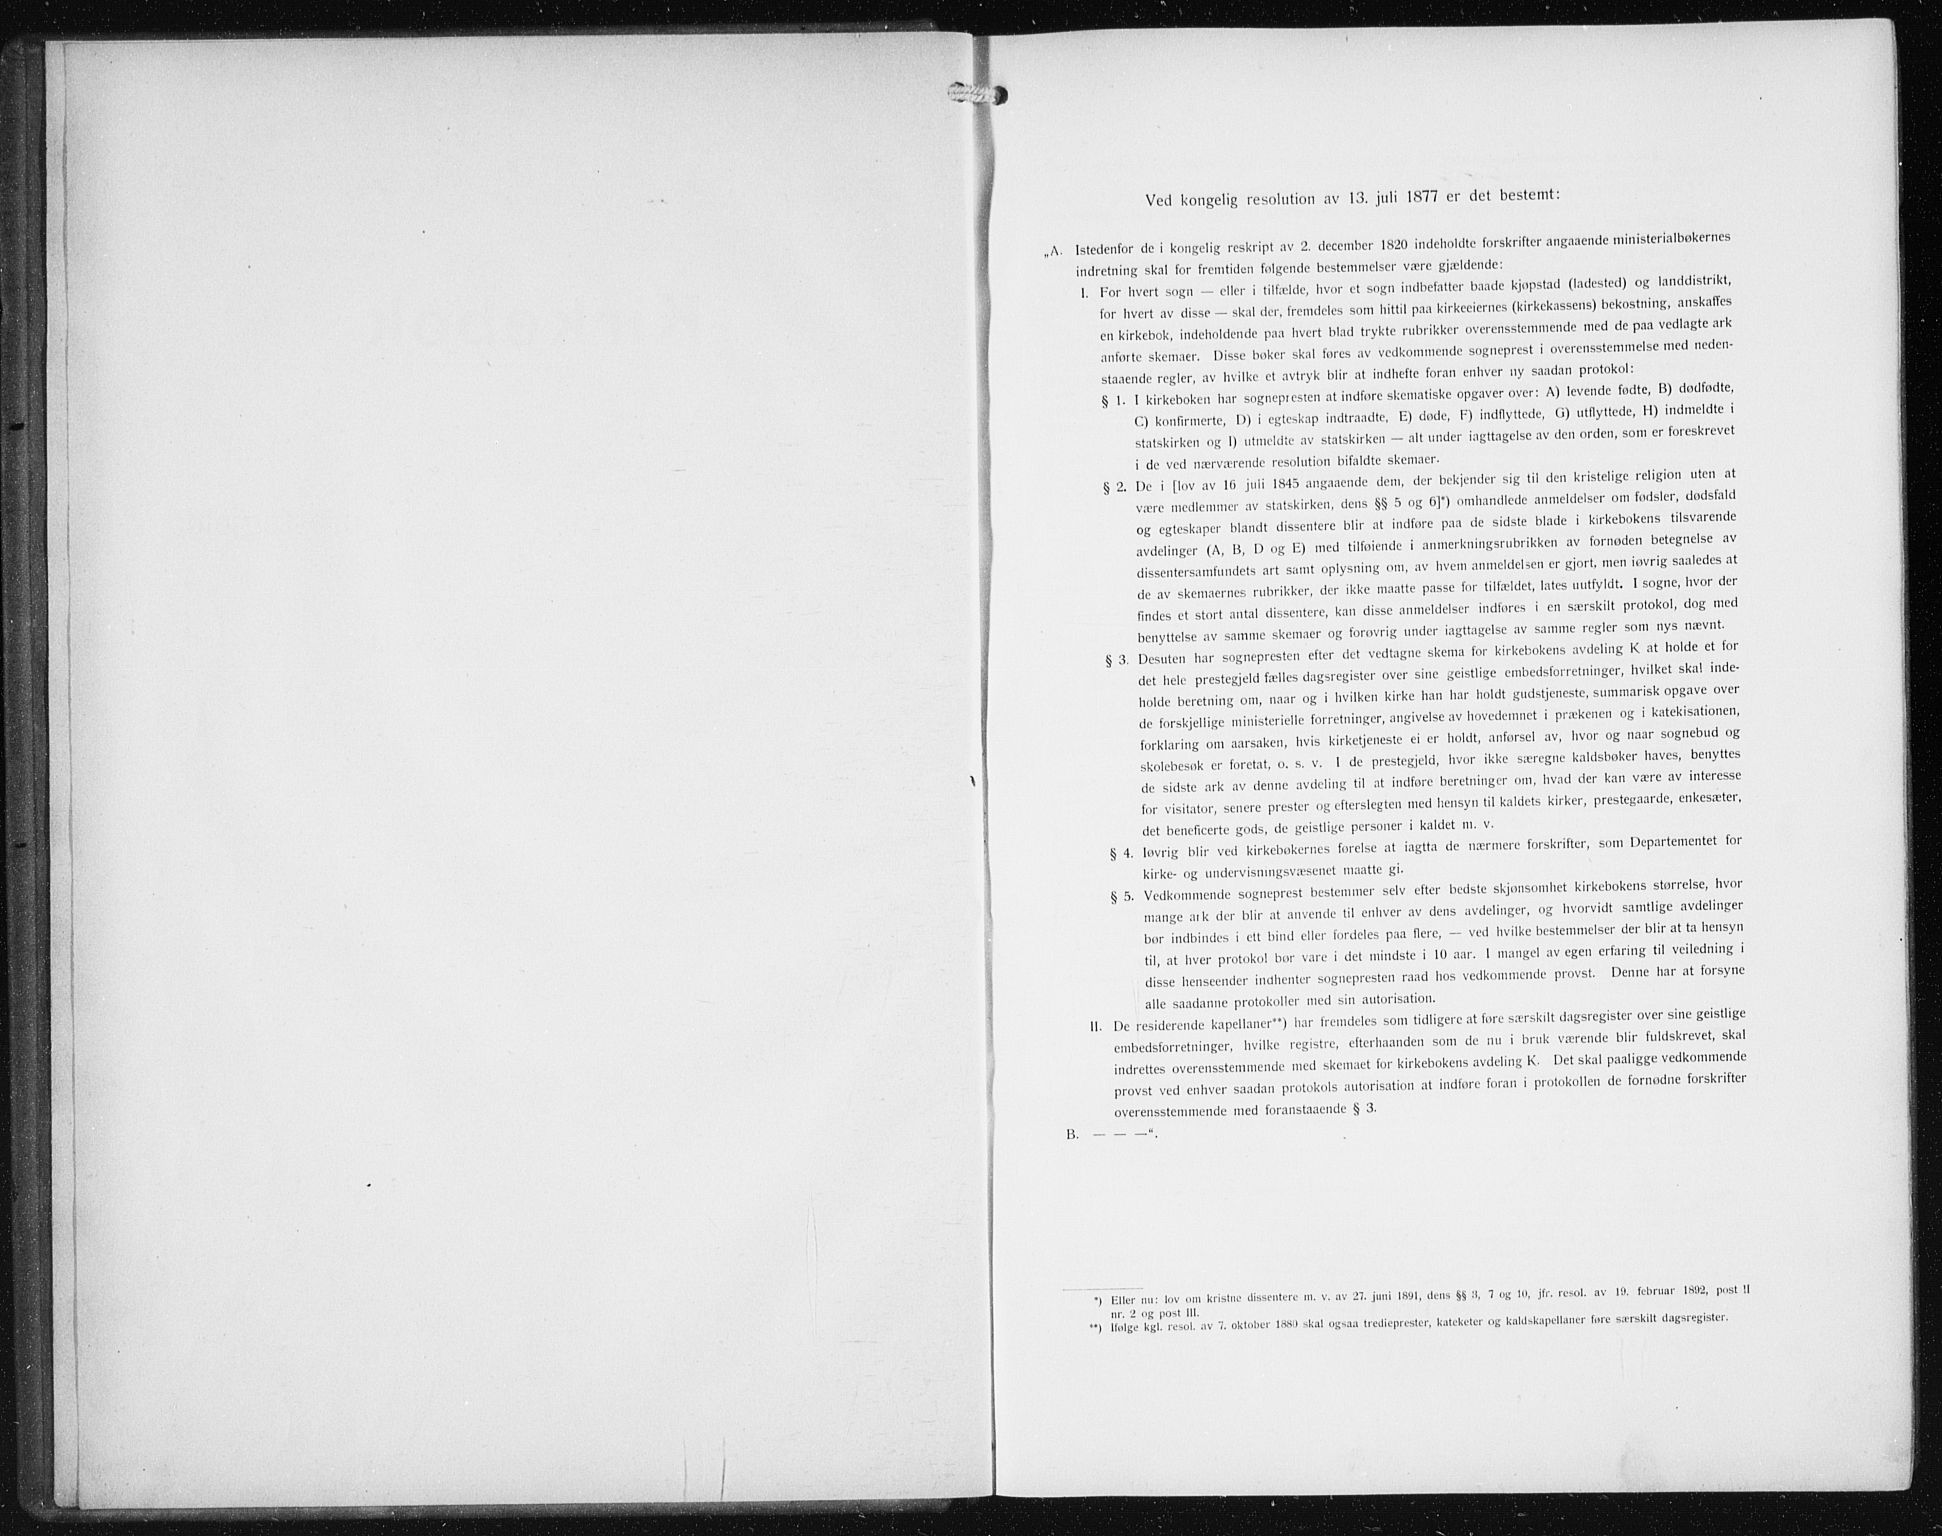 Den norske sjømannsmisjon i utlandet/Philadelphia, SAB/SAB/PA-0113/H/Ha/L0001: Ministerialbok nr. A 1, 1912-1931